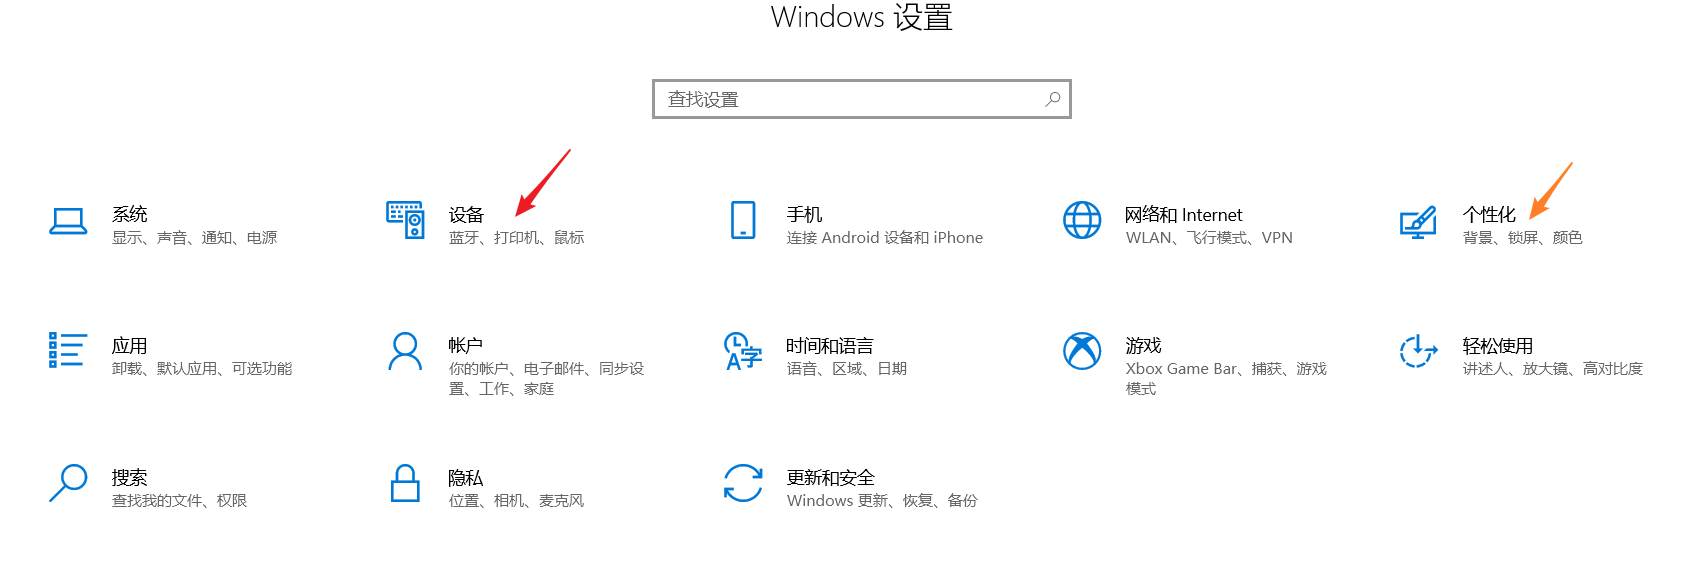 Windows设置页面